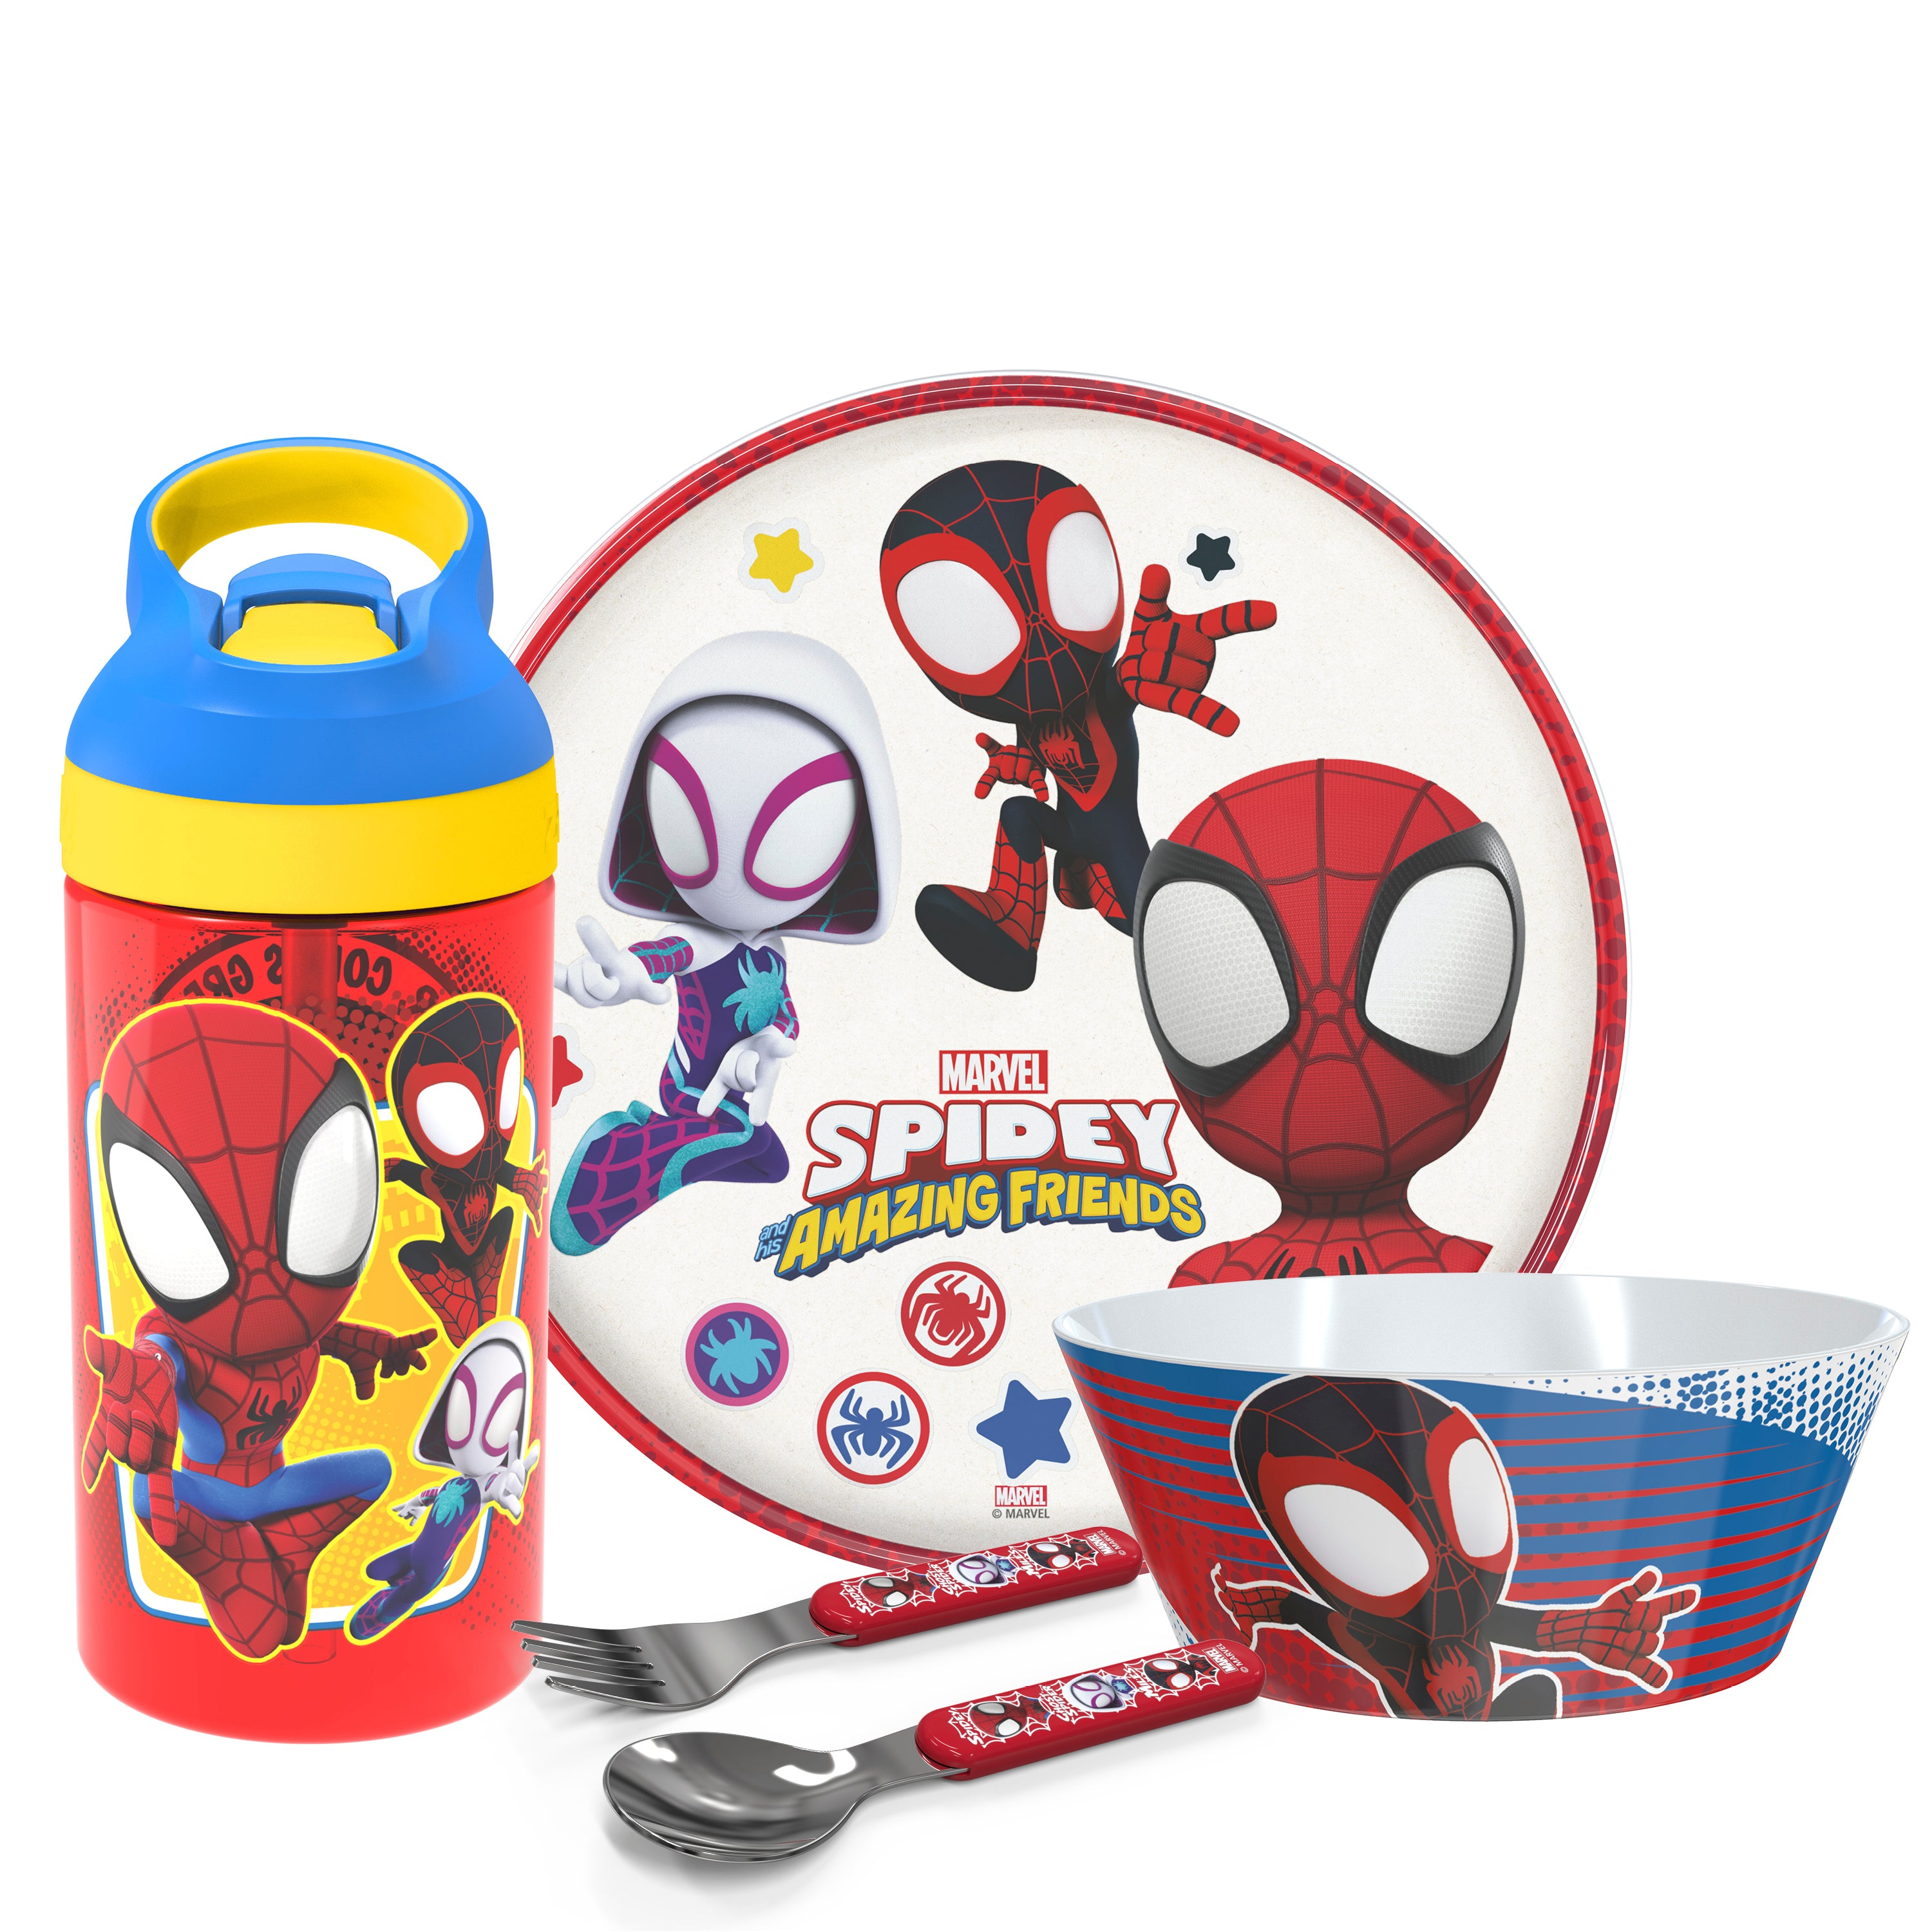 Marvel Spidey and Friends 5 Piece Melamine Kids Dinnerware Set with Water Bottle